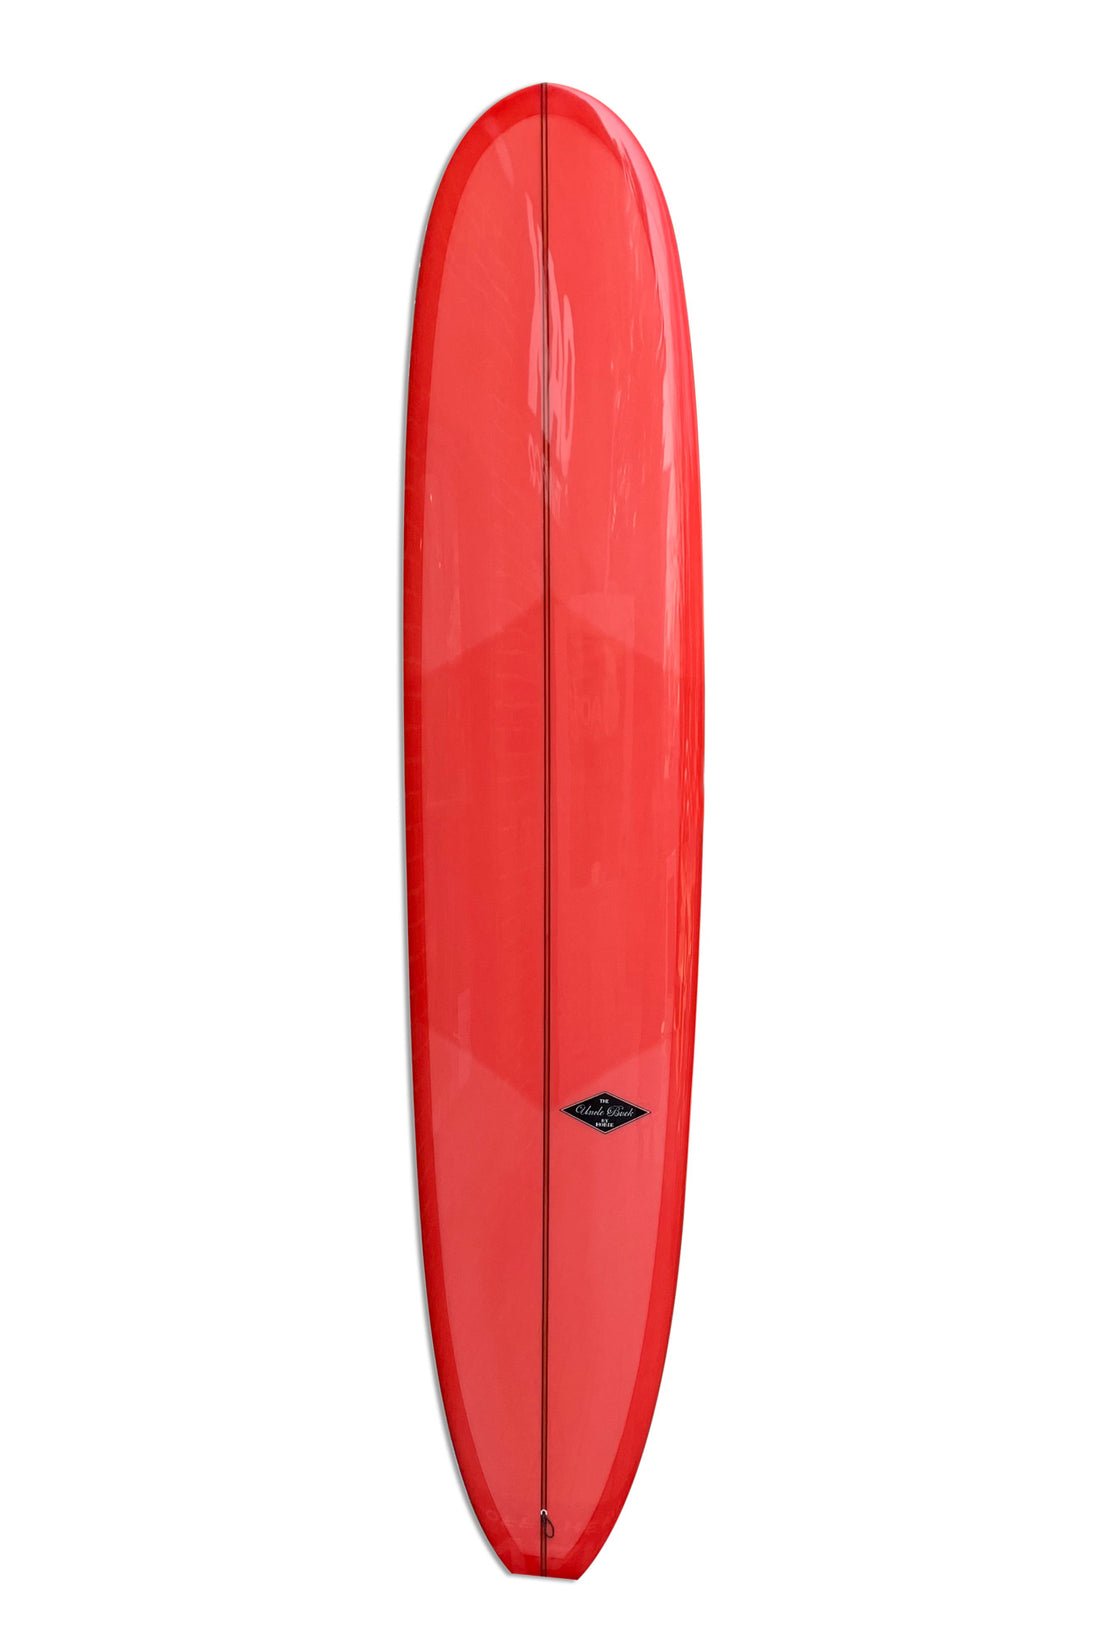 9'2 HOBIE UNCLE BUCK - PINK SURFBOARD HOBIE   